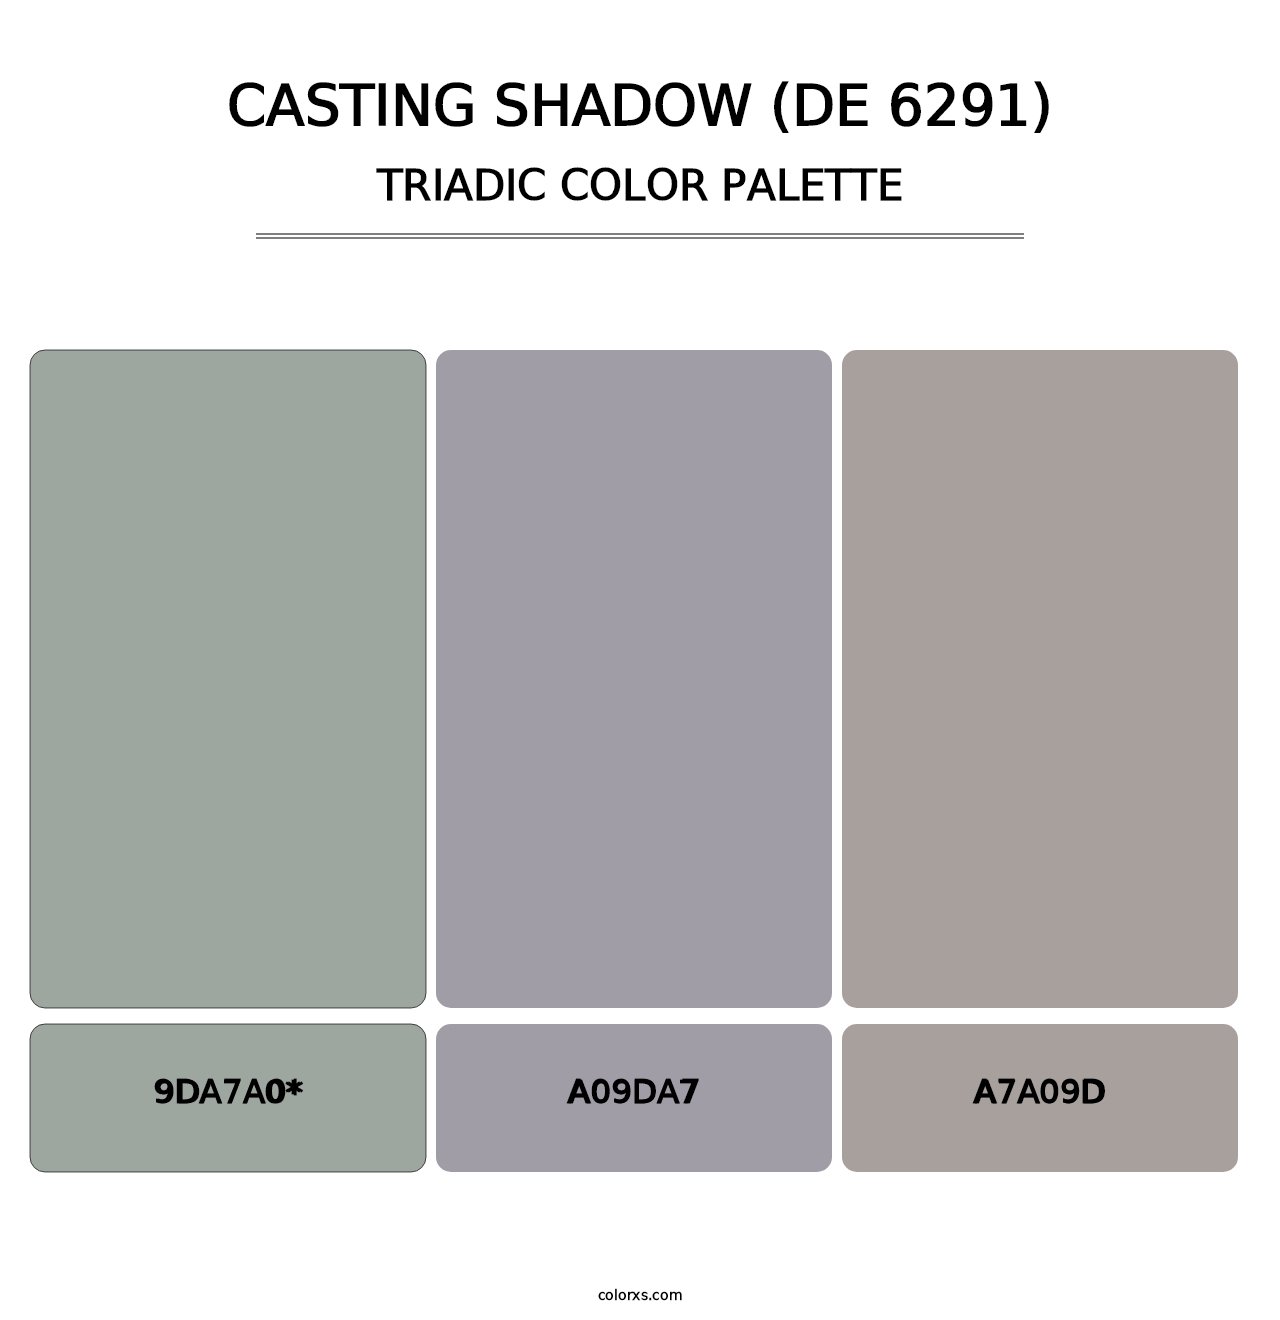 Casting Shadow (DE 6291) - Triadic Color Palette